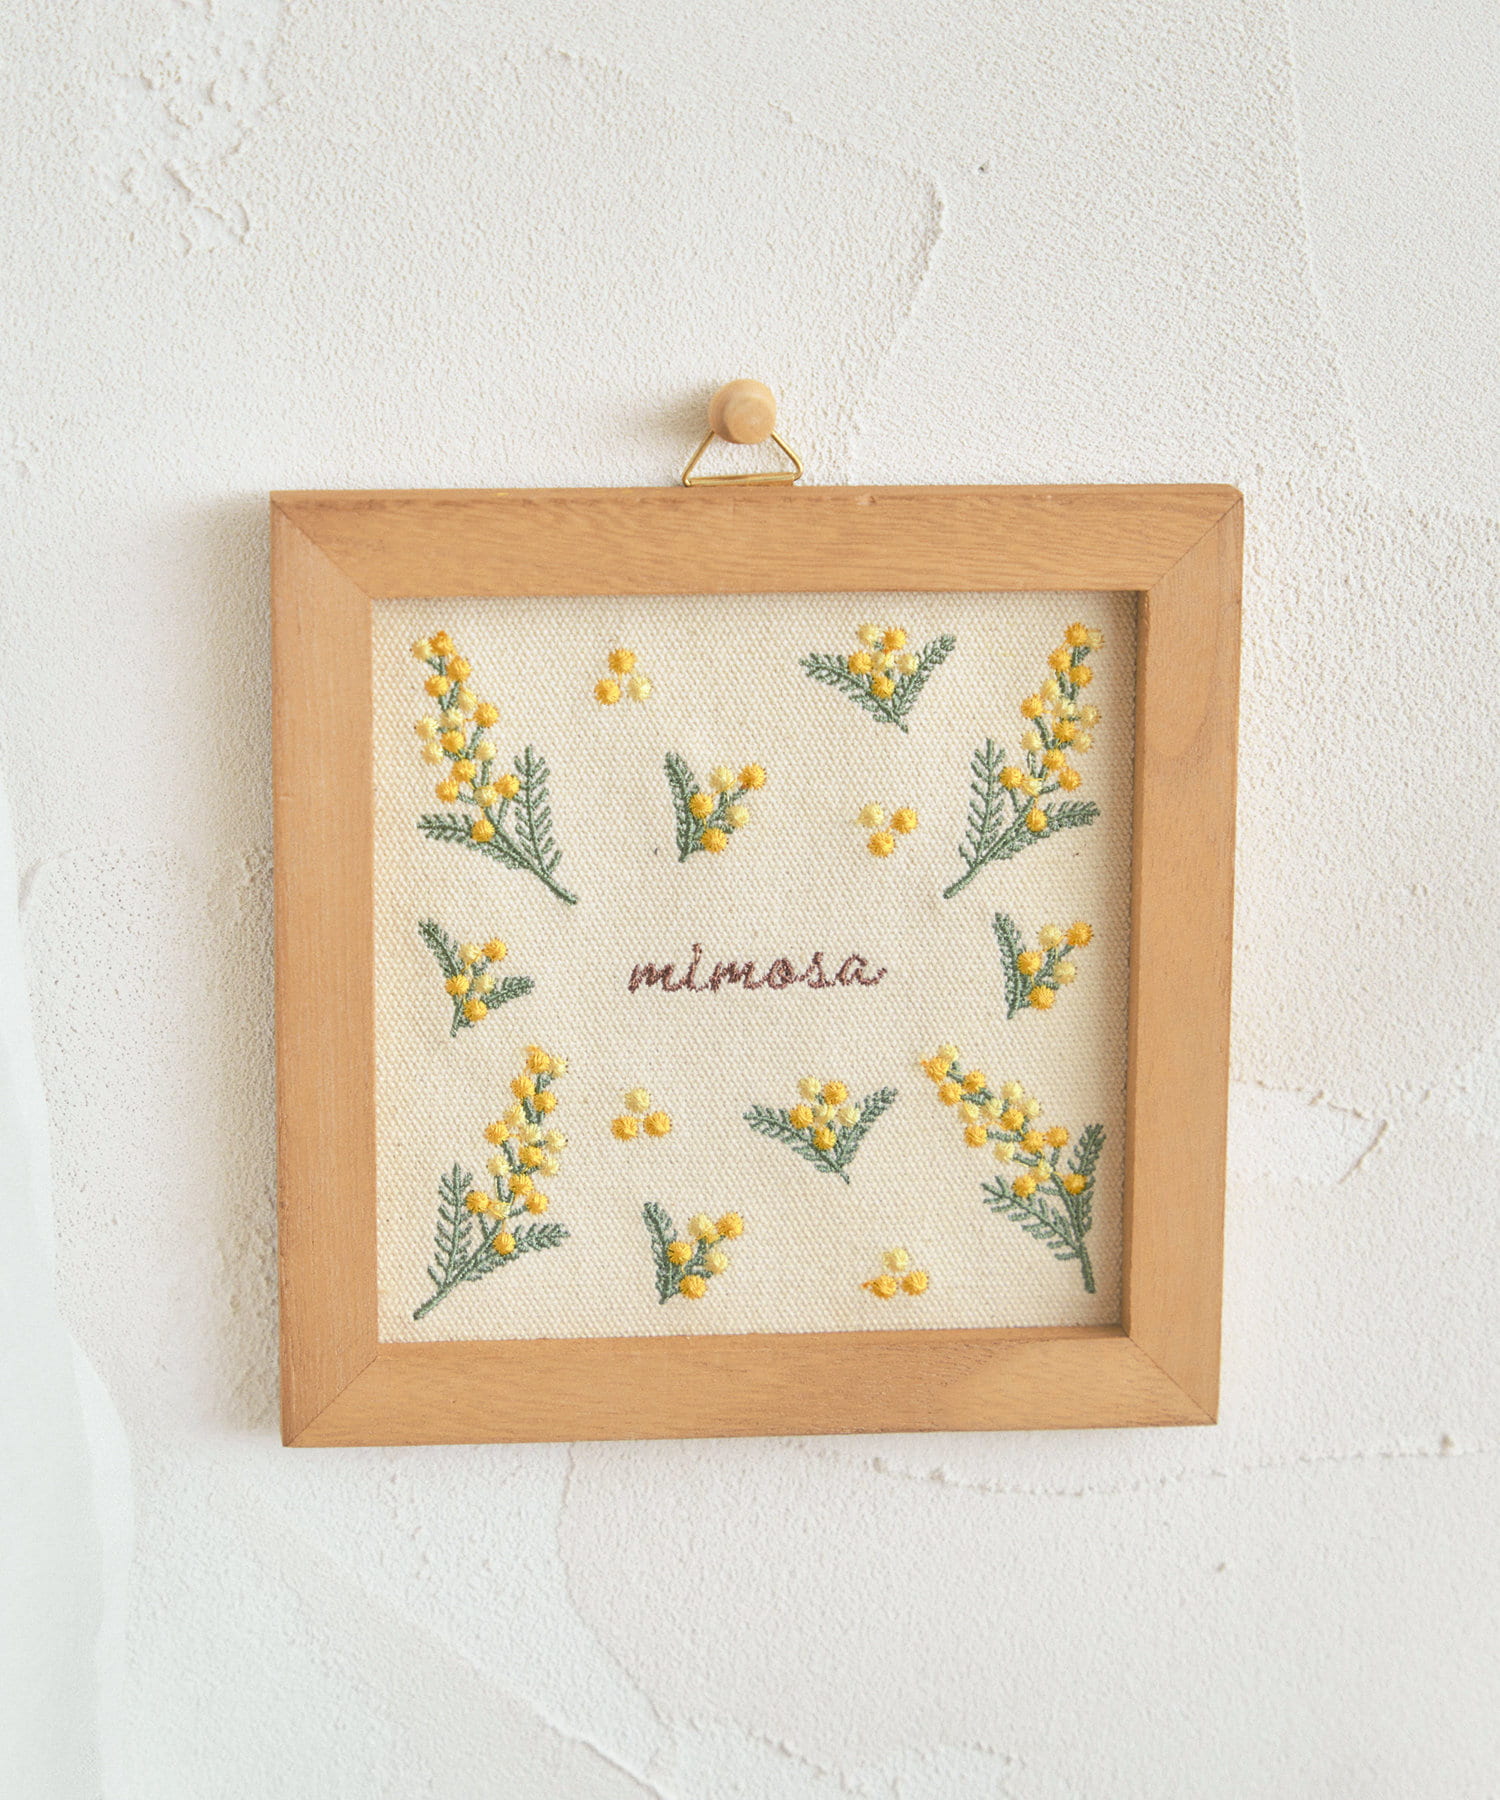 salut!(サリュ) 【mimosa】mimosa刺繍パネルパターン